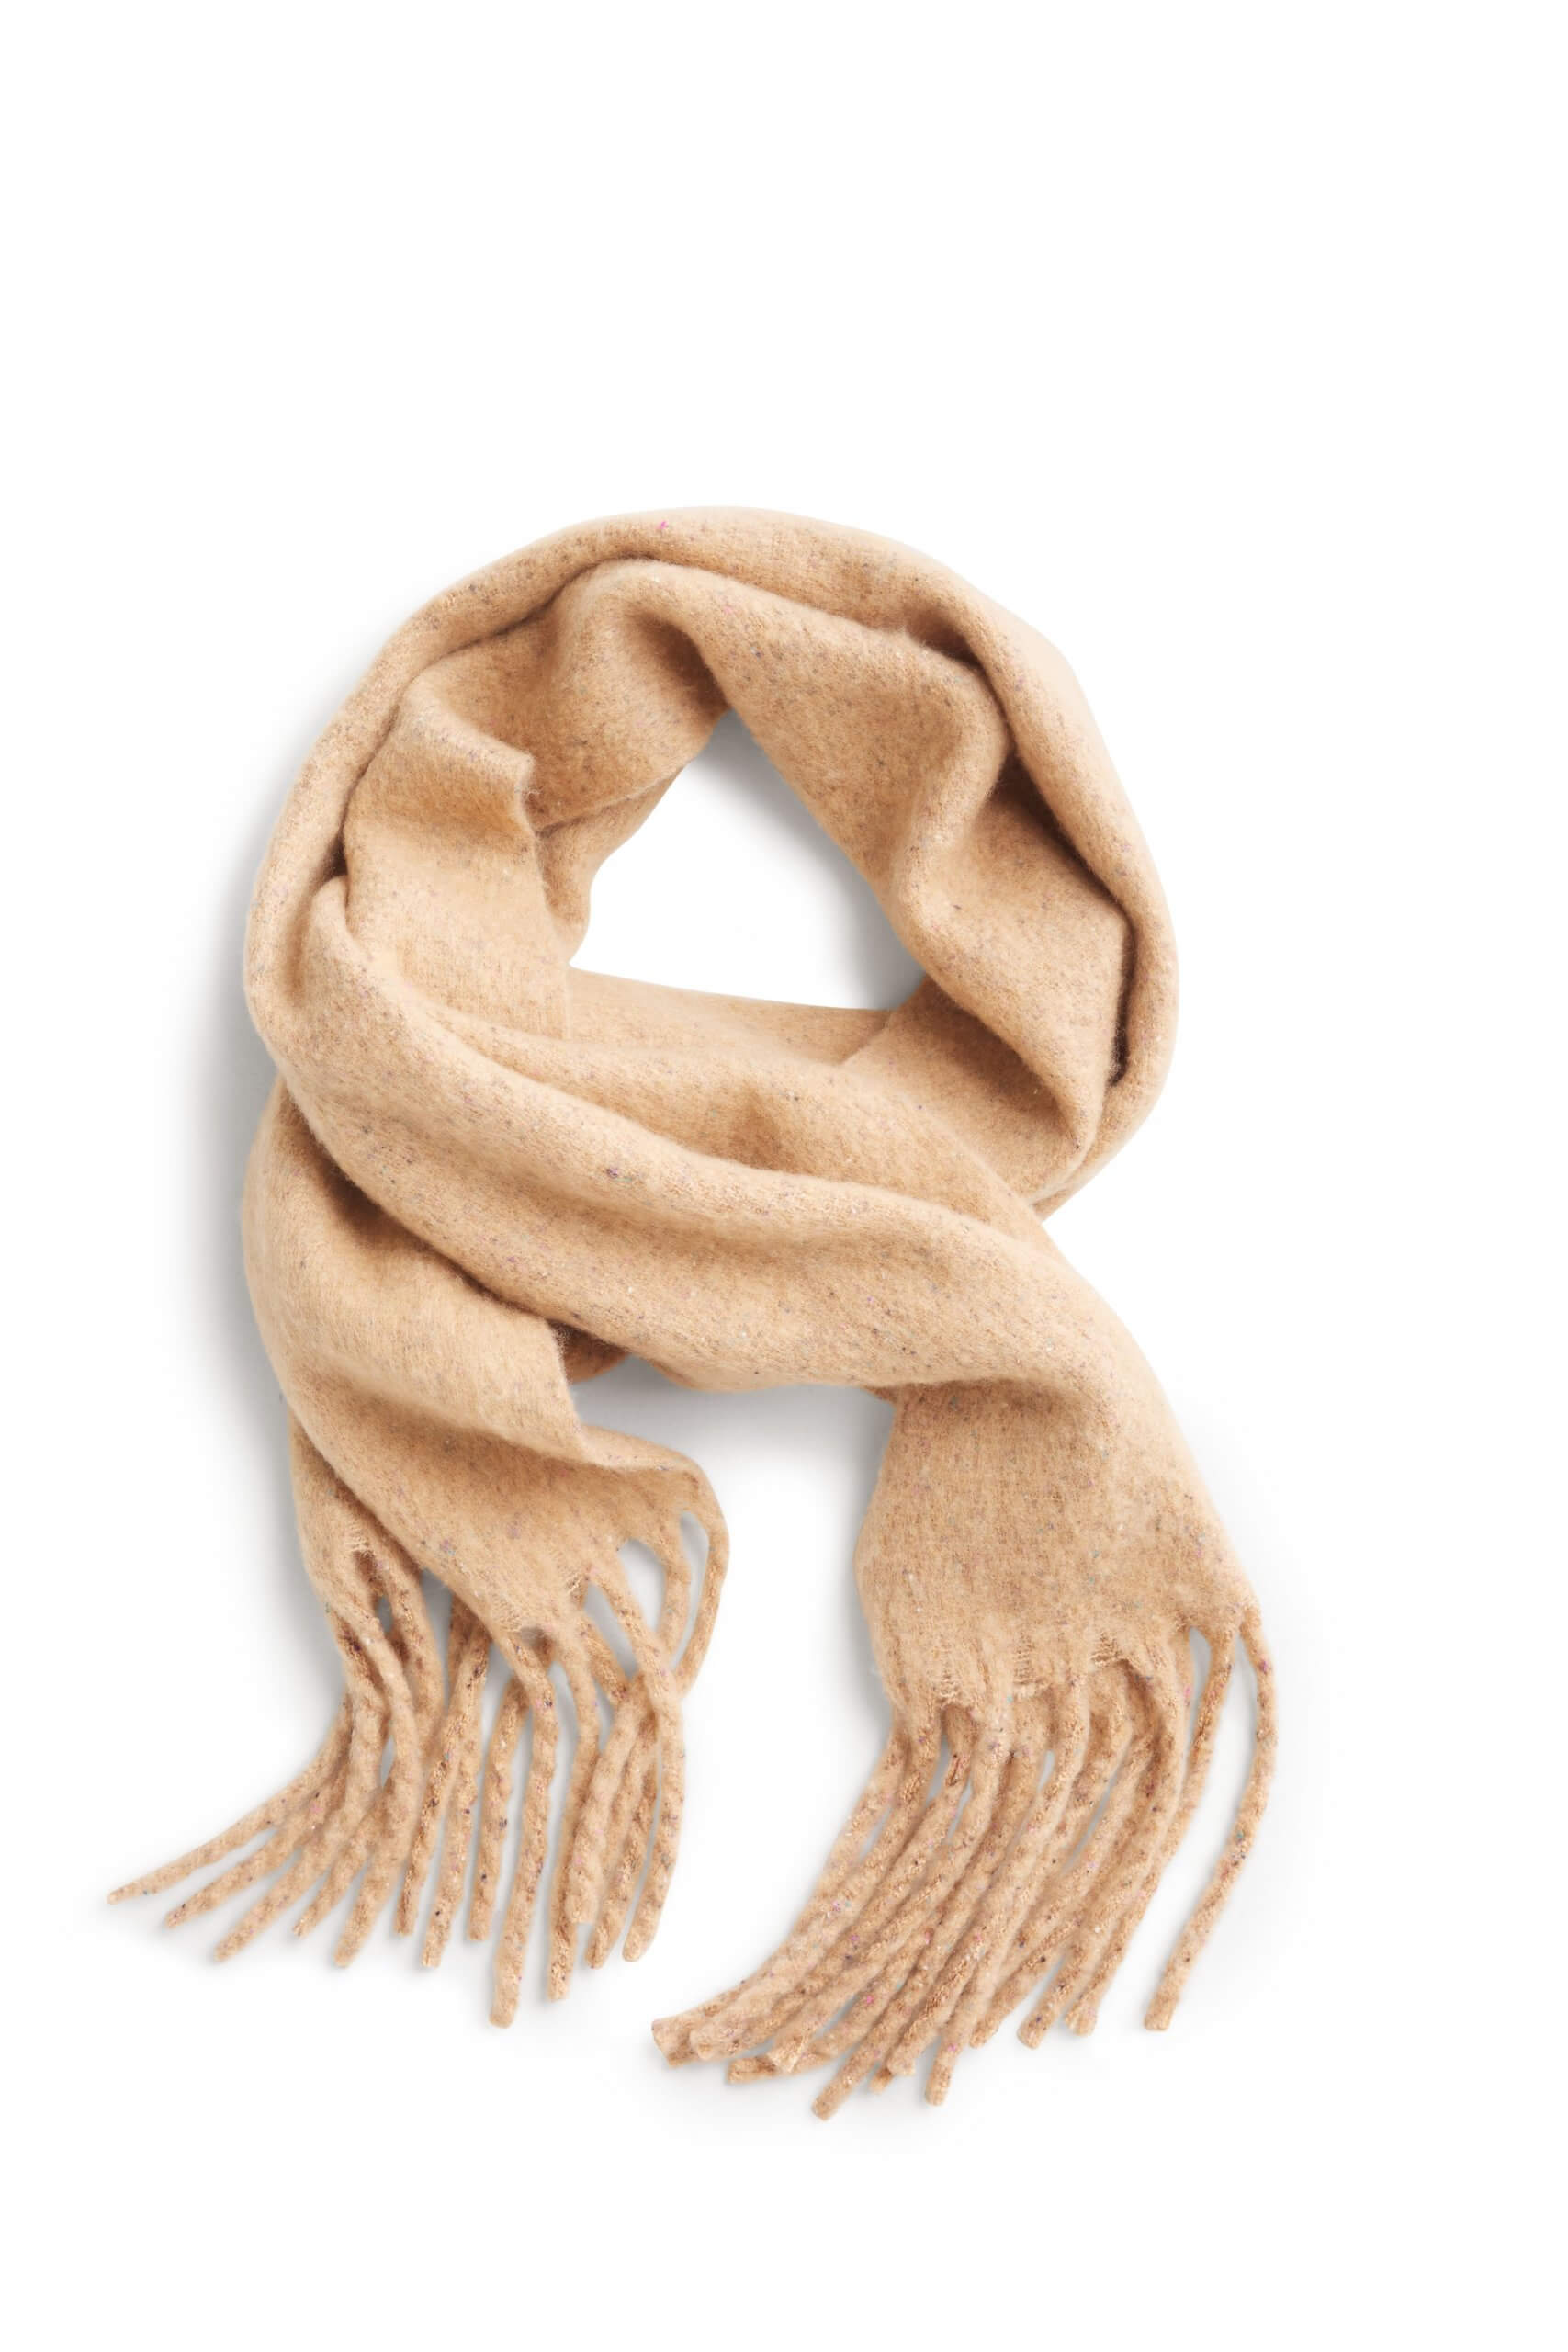 Stitch Fix Women's tan wrap scarf with fringe.